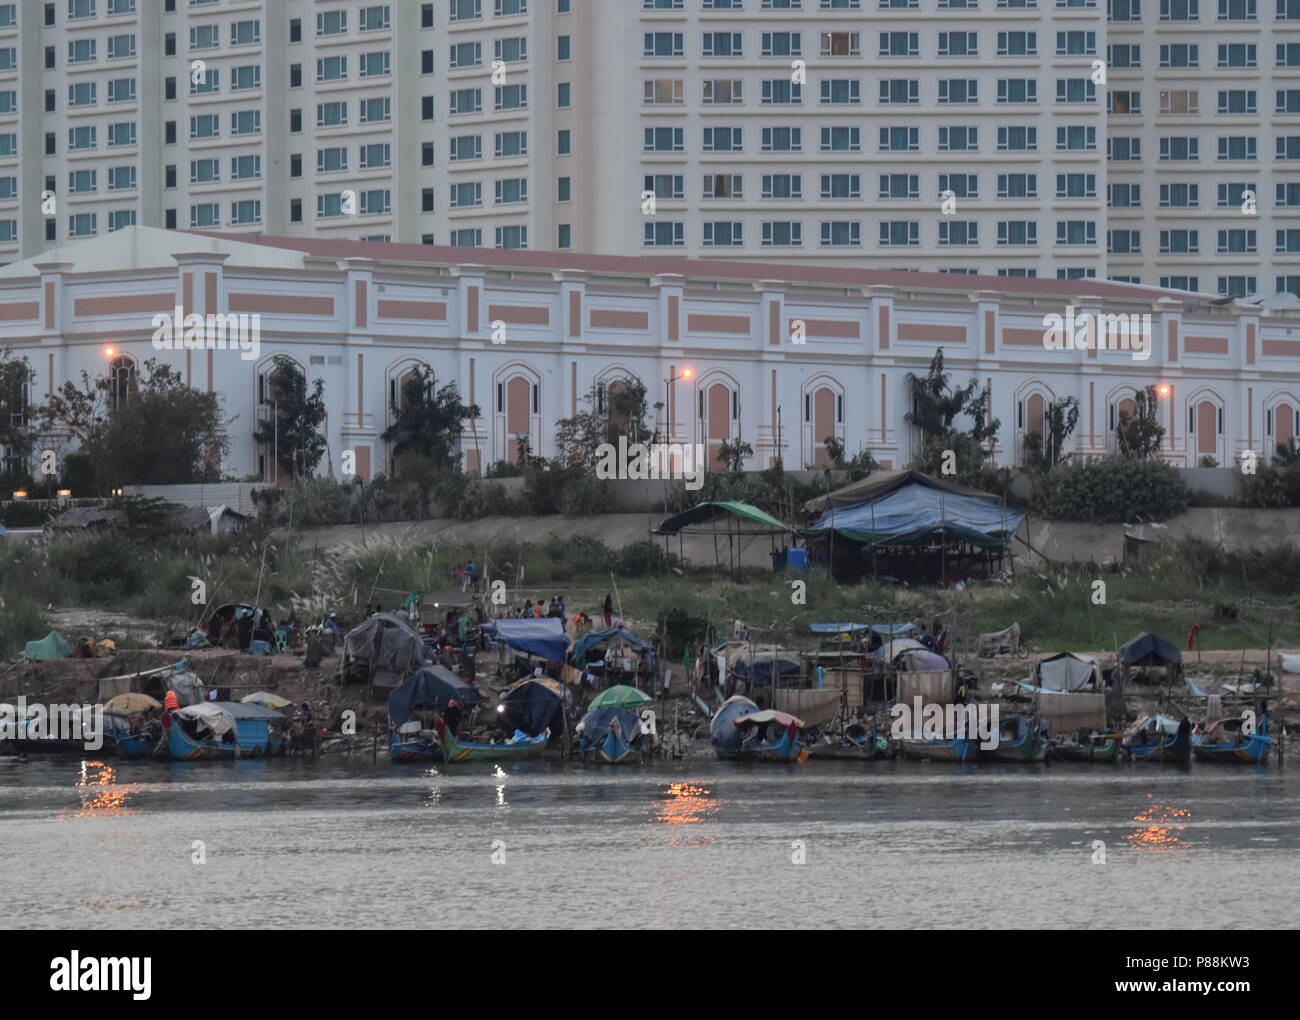 Le contraste des hôtels de luxe et des bateaux de pêche et la pauvreté des minorités musulmanes le long de la rivière du Mékong à Phnom Penh, Cambodge Banque D'Images